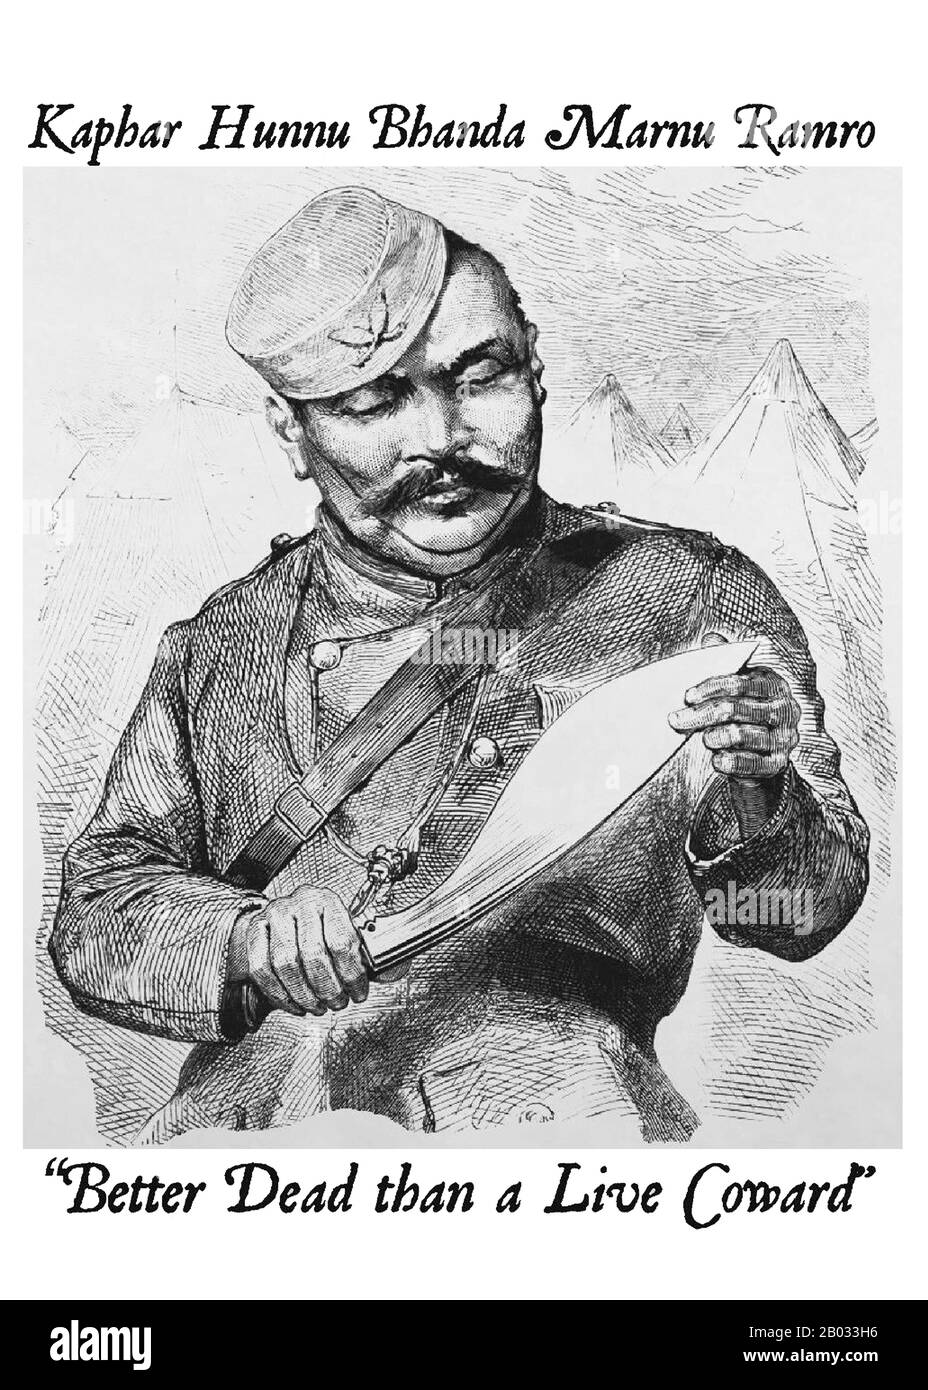 Les Gurkhas sont des soldats du Népal. Le nom peut être tracé au guerrier hindou médiéval Saint Guru Gorakhnath qui a un sanctuaire historique à Gorkha, au Népal. Gurkhas sont étroitement associés aux khukuri, un couteau népalais à la malédiction et ont une réputation bien connue pour leur proesse militaire effréante. L'ancien chef d'état-major de l'armée indienne, le maréchal Sam Manekshaw, a déclaré une fois que "Si un homme dit qu'il n'a pas peur de mourir, il menait ou est un Gurkha". Banque D'Images